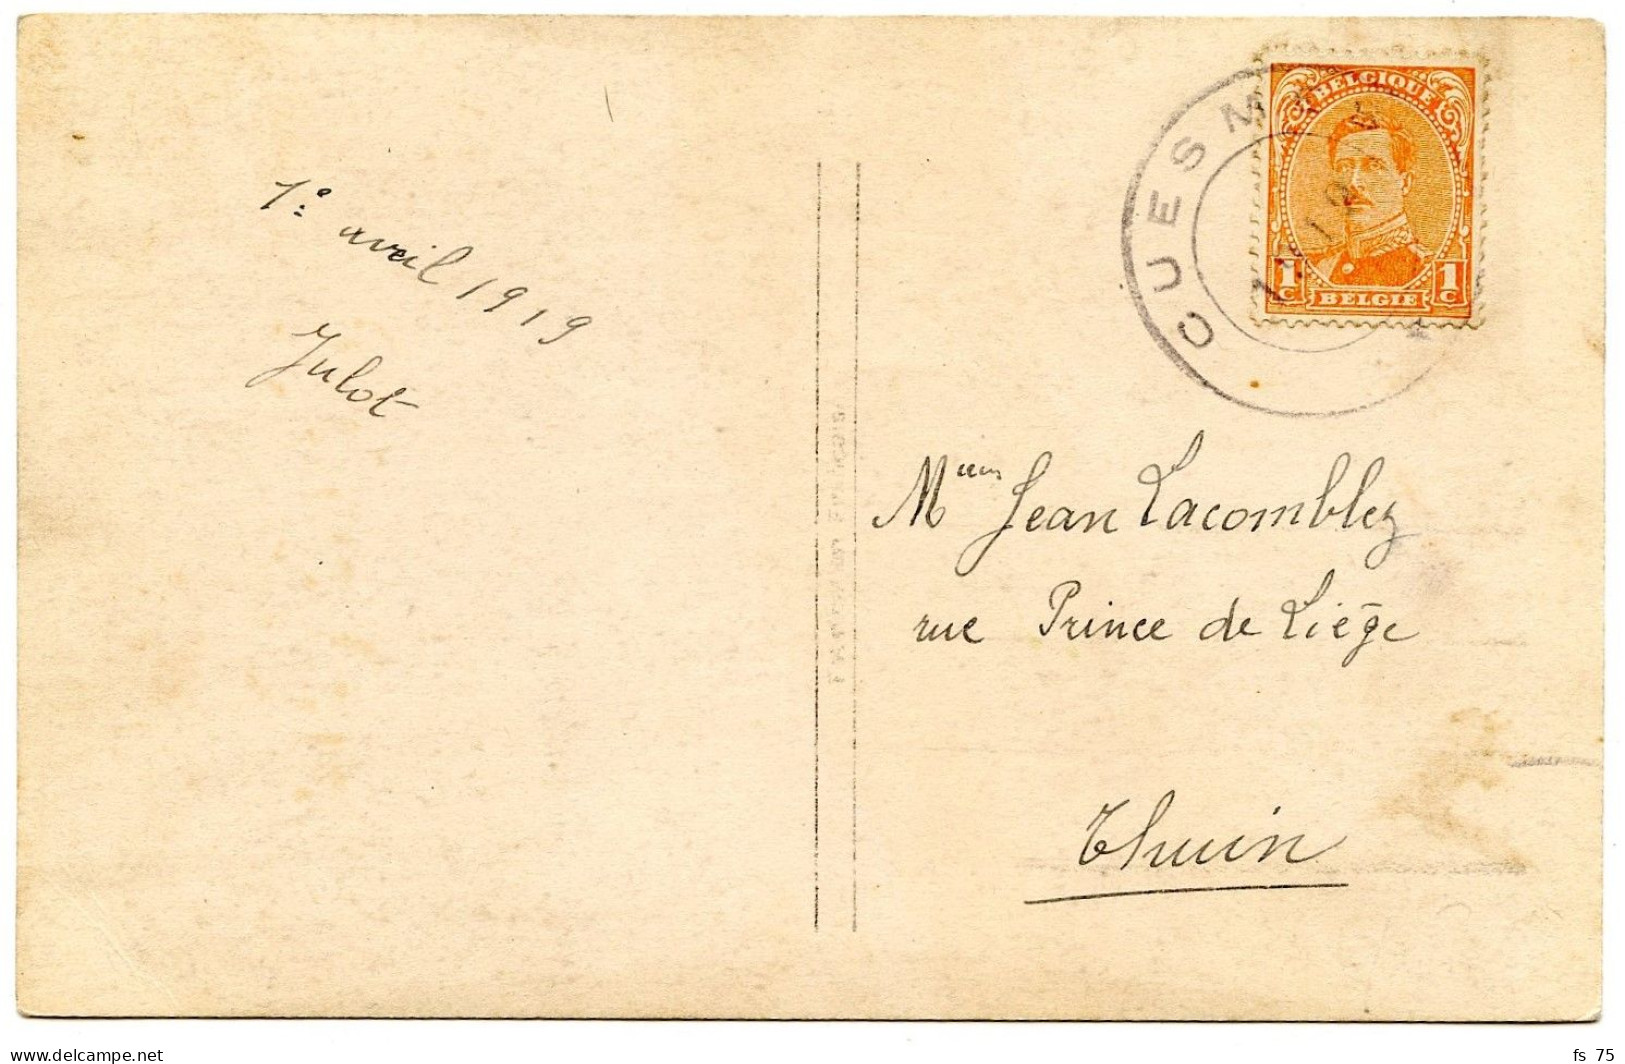 BELGIQUE - COB 135 CACHET CAOUTCHOUC CUESMES SUR CARTE POSTALE, 1919 - Briefe U. Dokumente